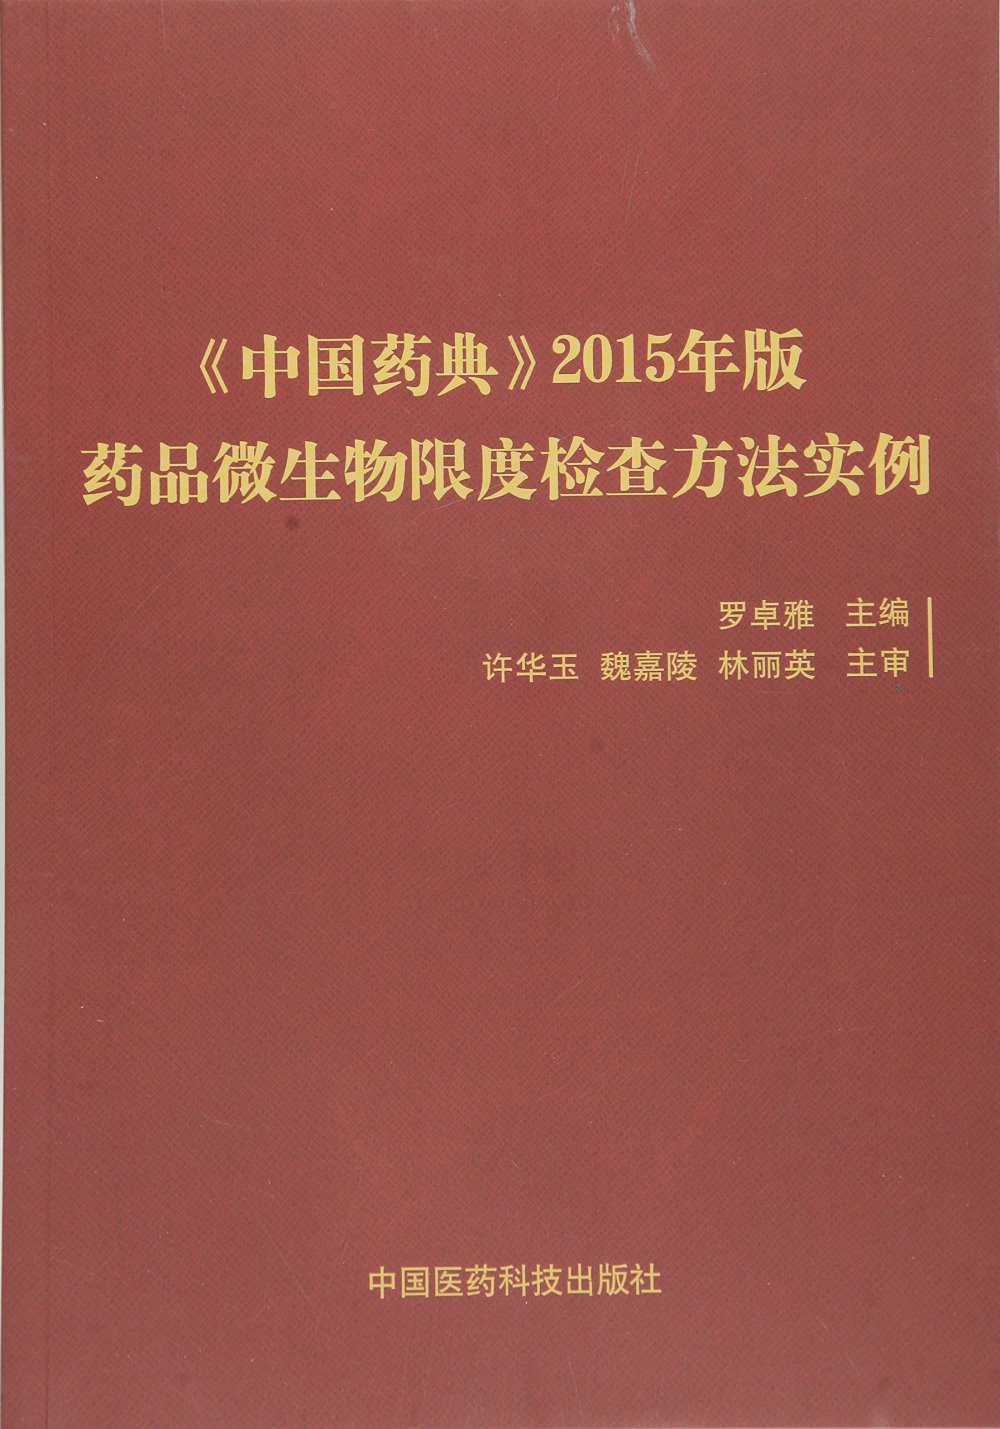 《中國藥典》2015年版藥品微生物限度檢查方法實例